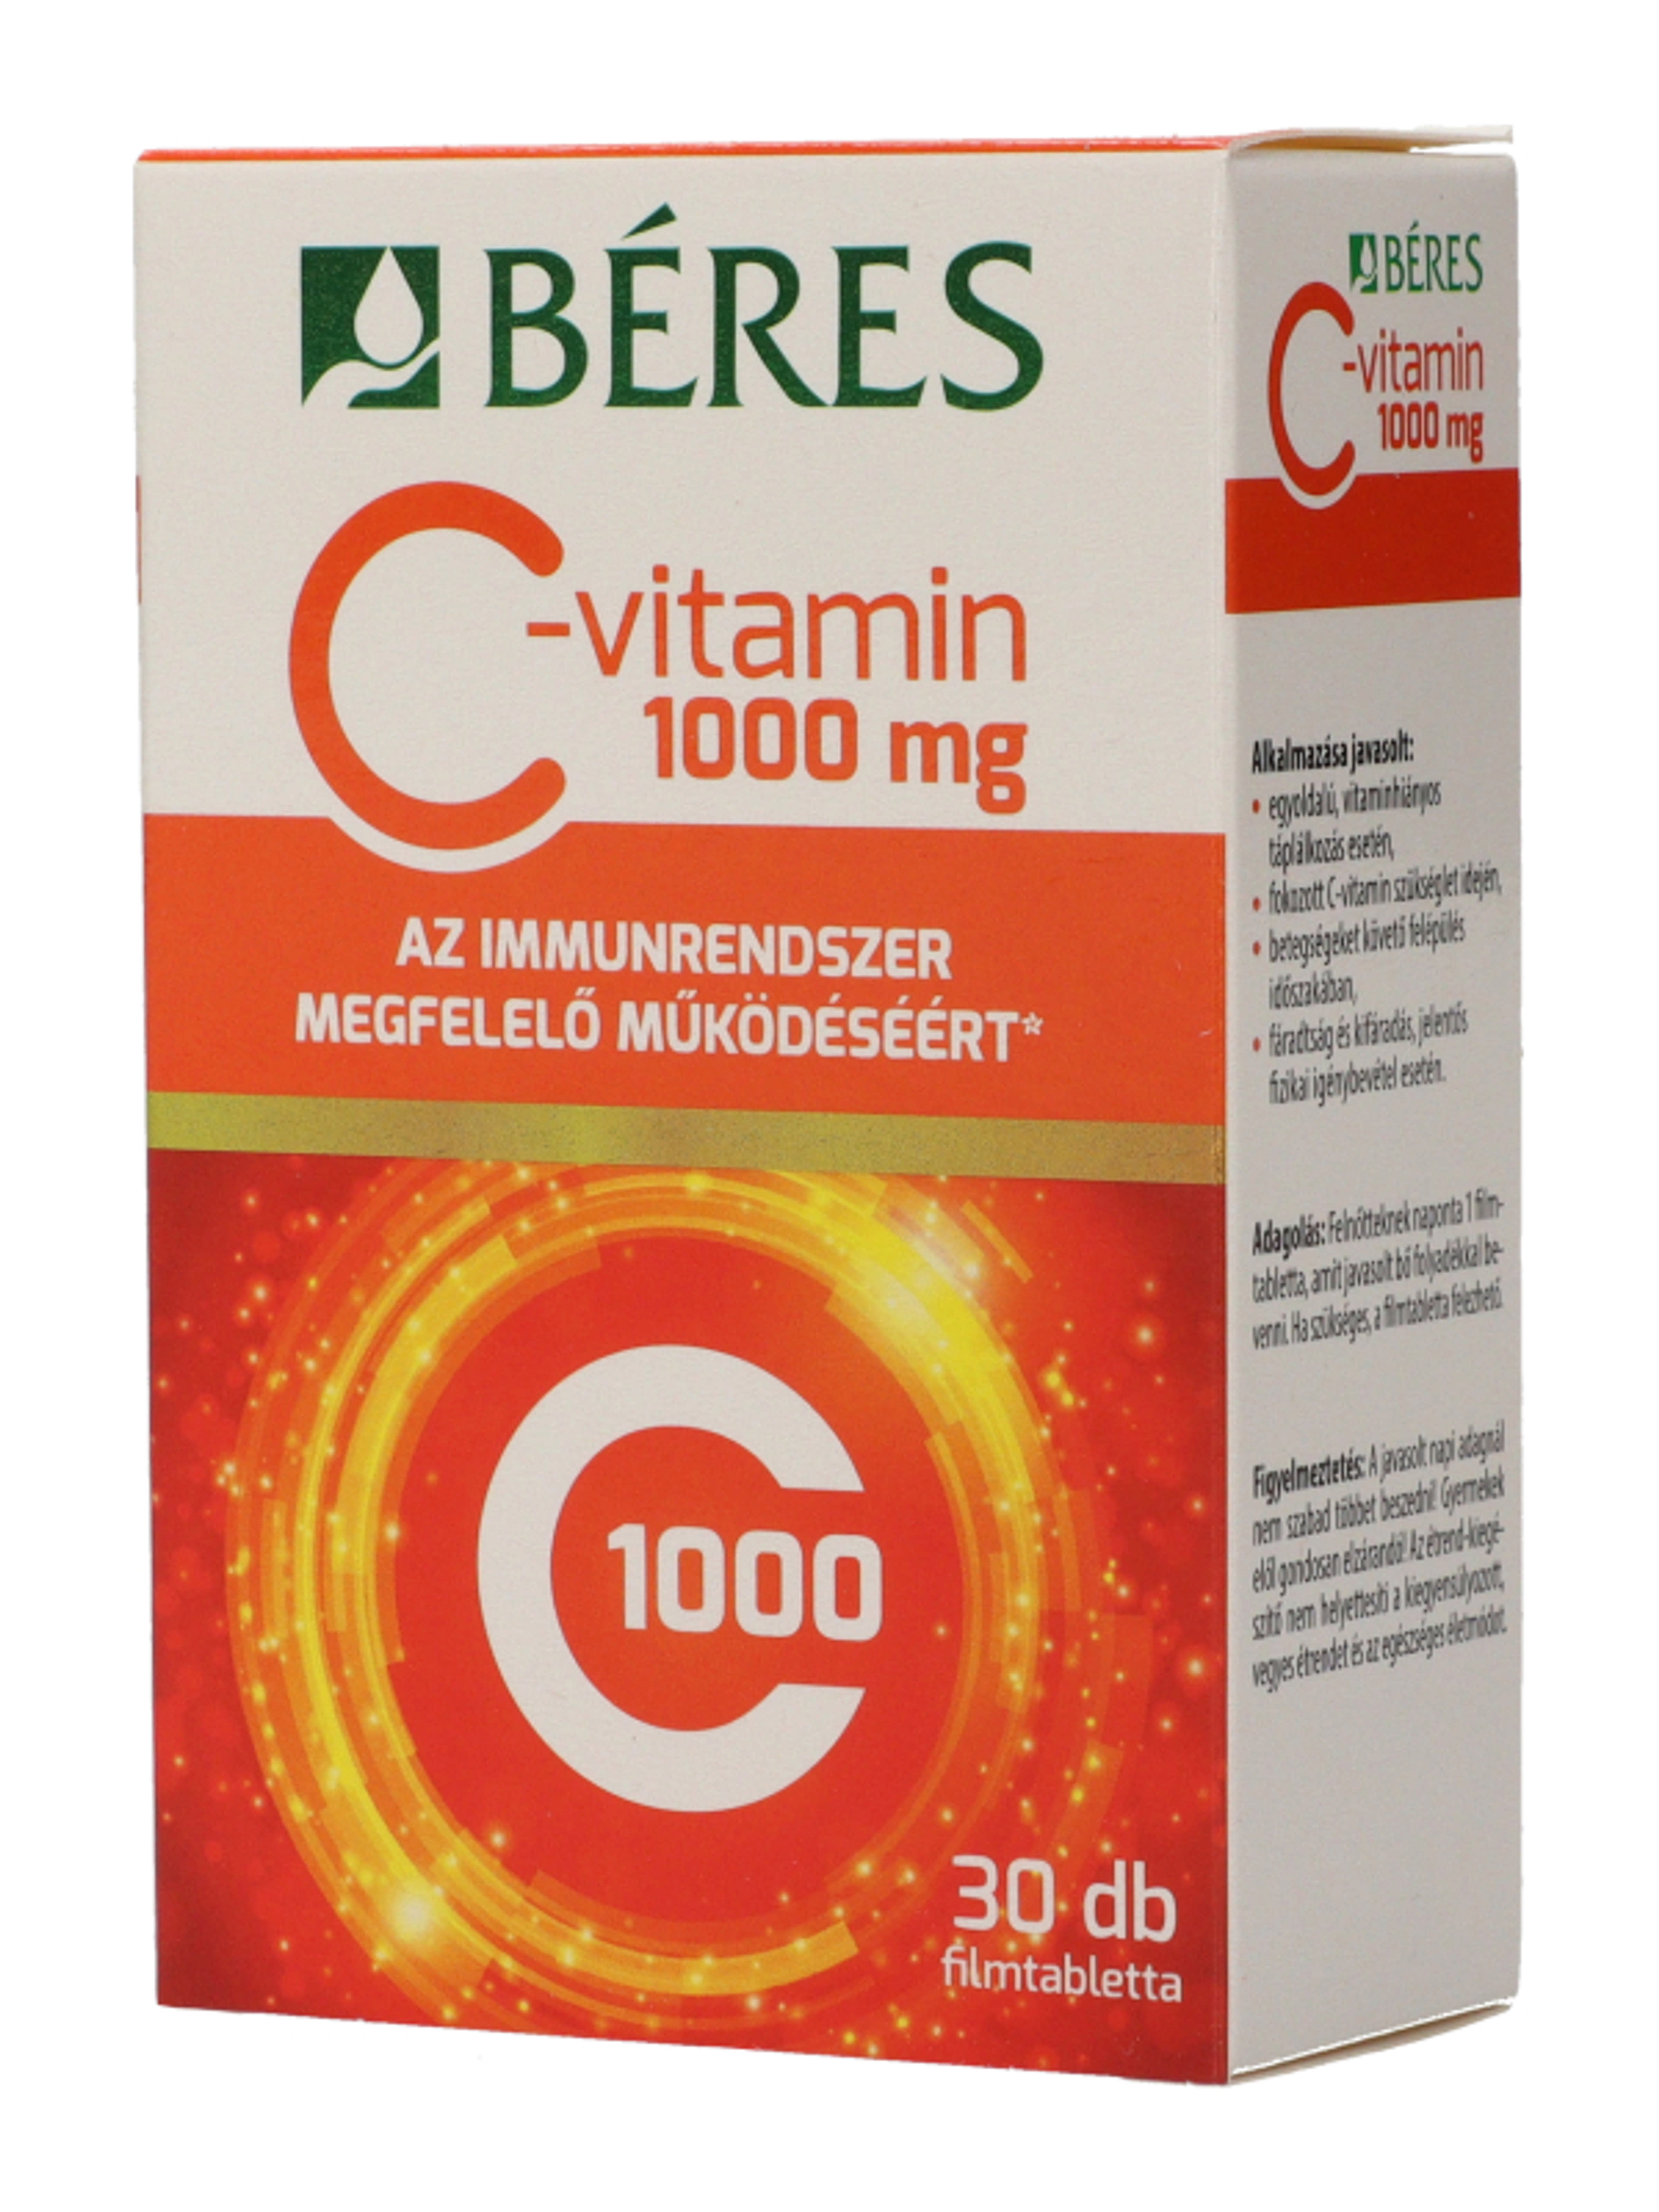 Beres C-vitamin 1000 mg filmtabletta - 30 db-4